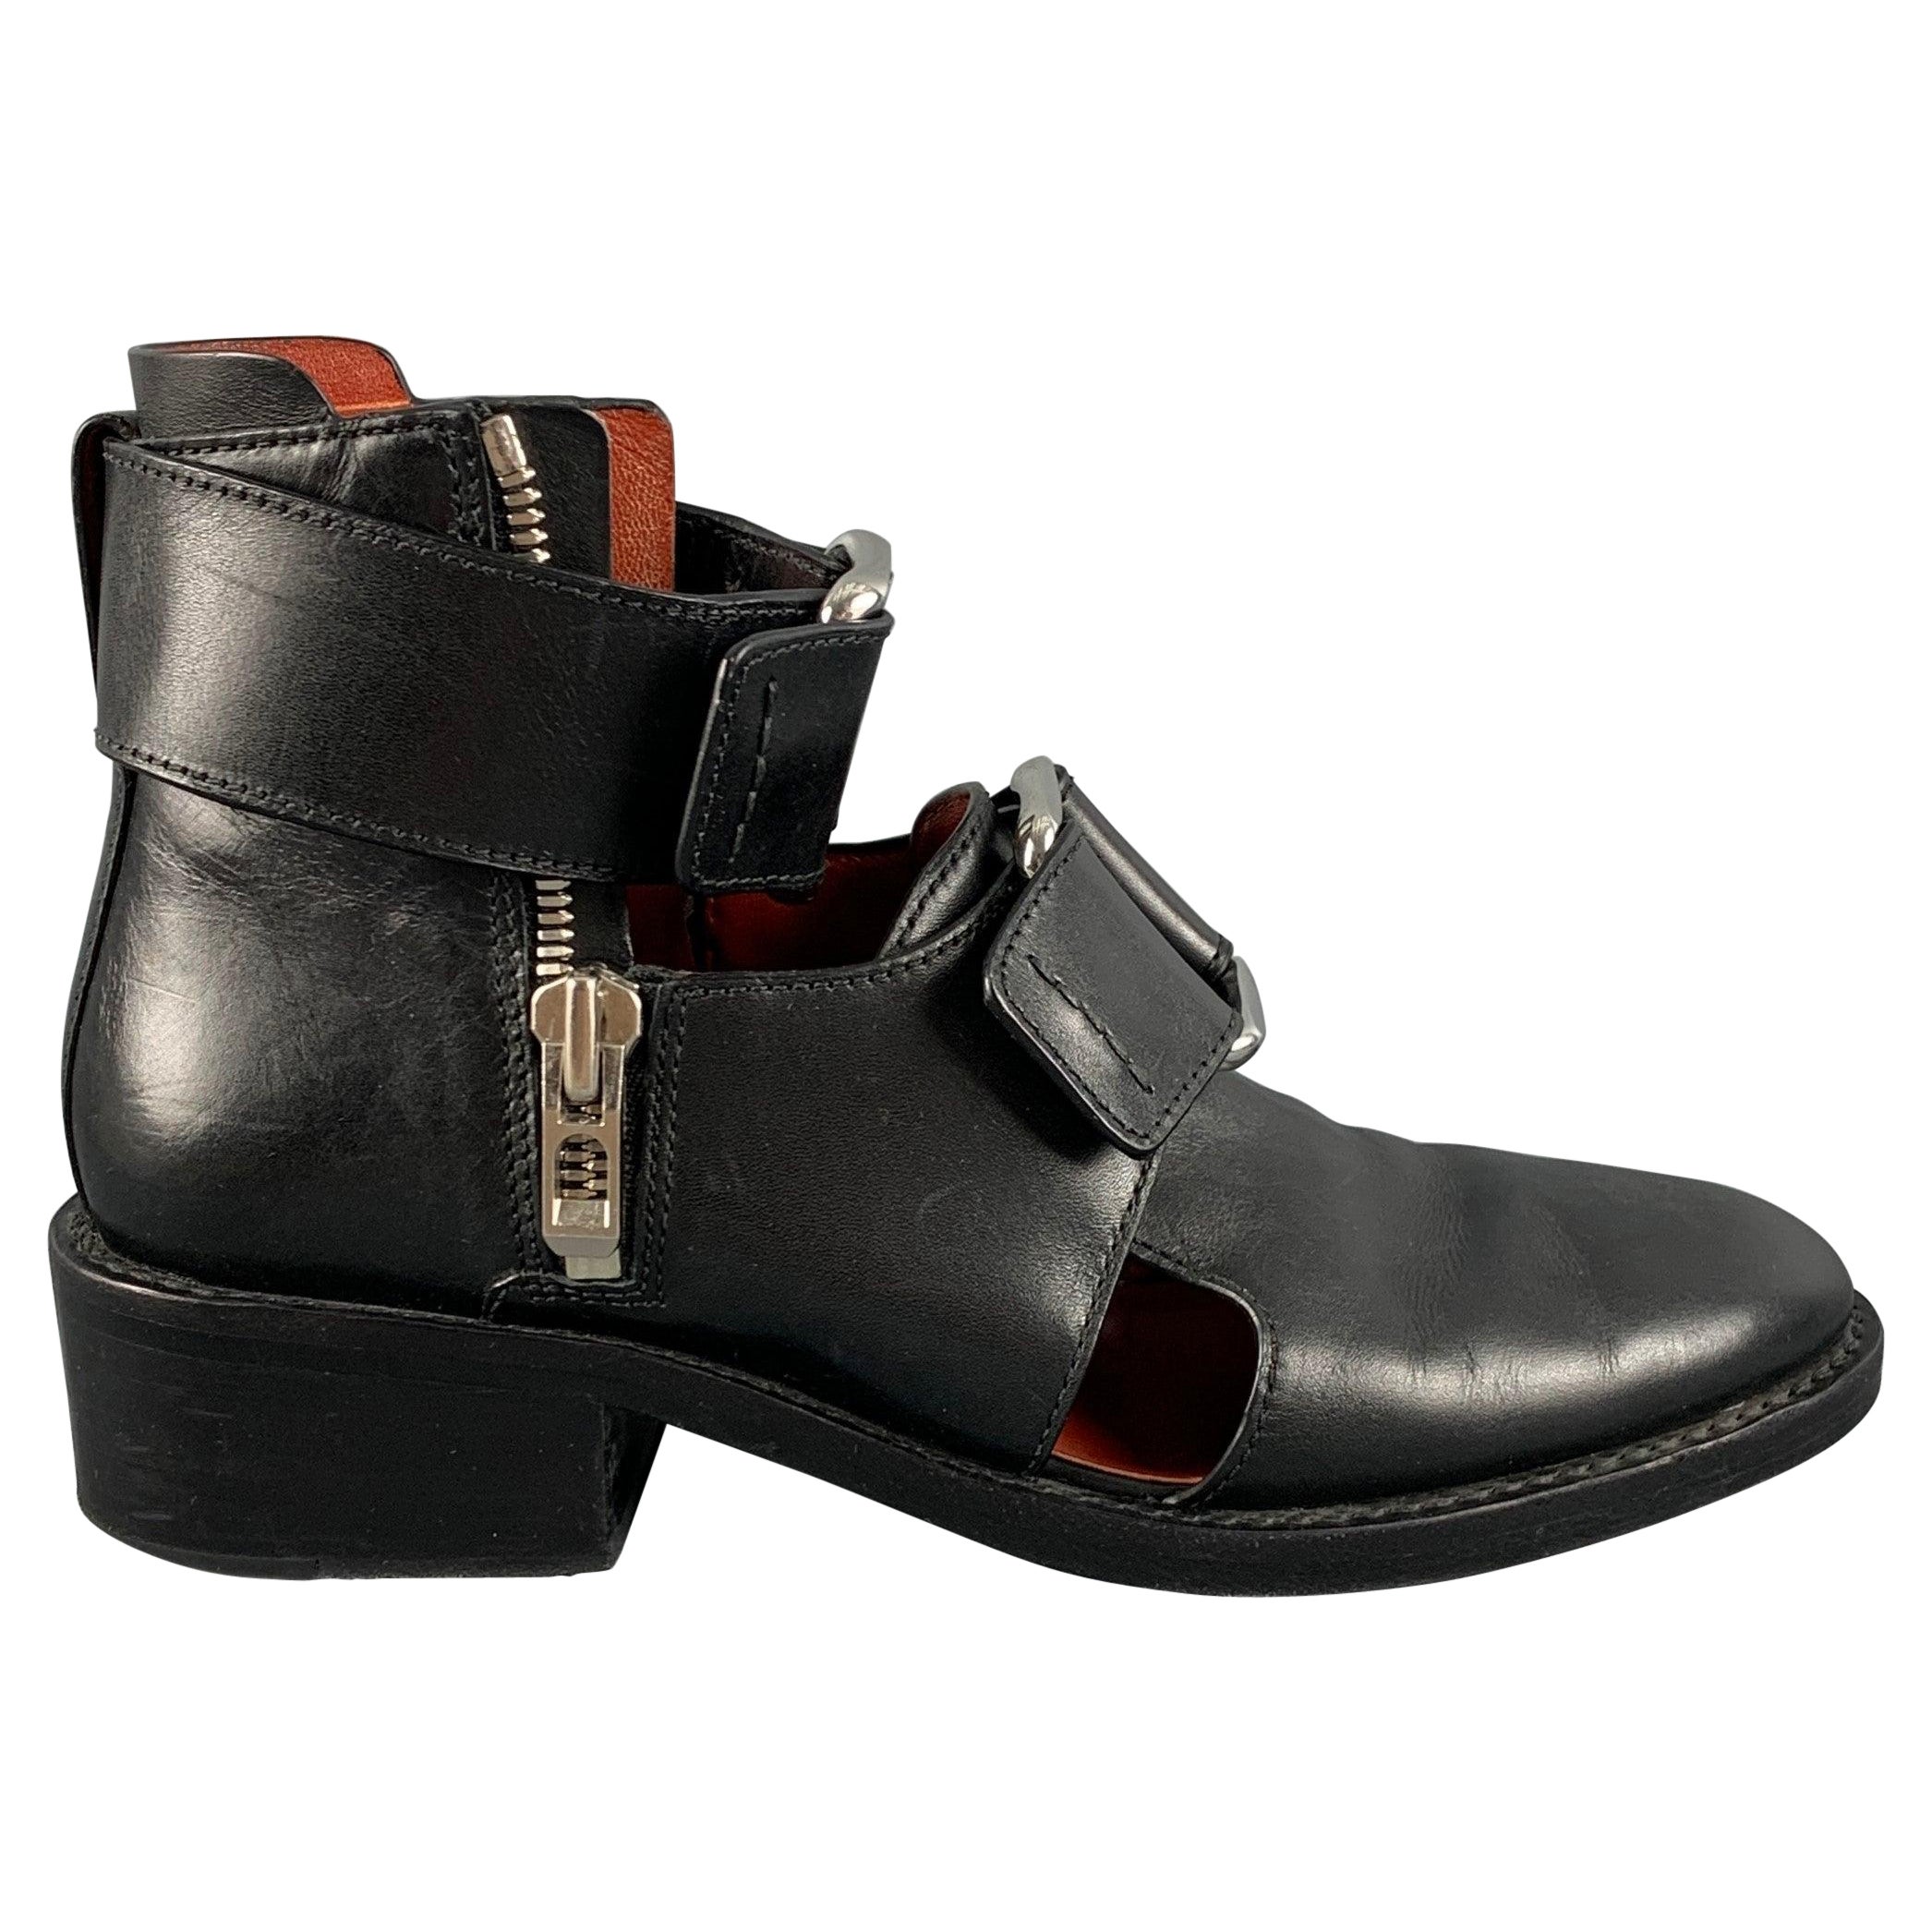 3.1 PHILLIP LIM Size 8 Black Cut Out Boots For Sale